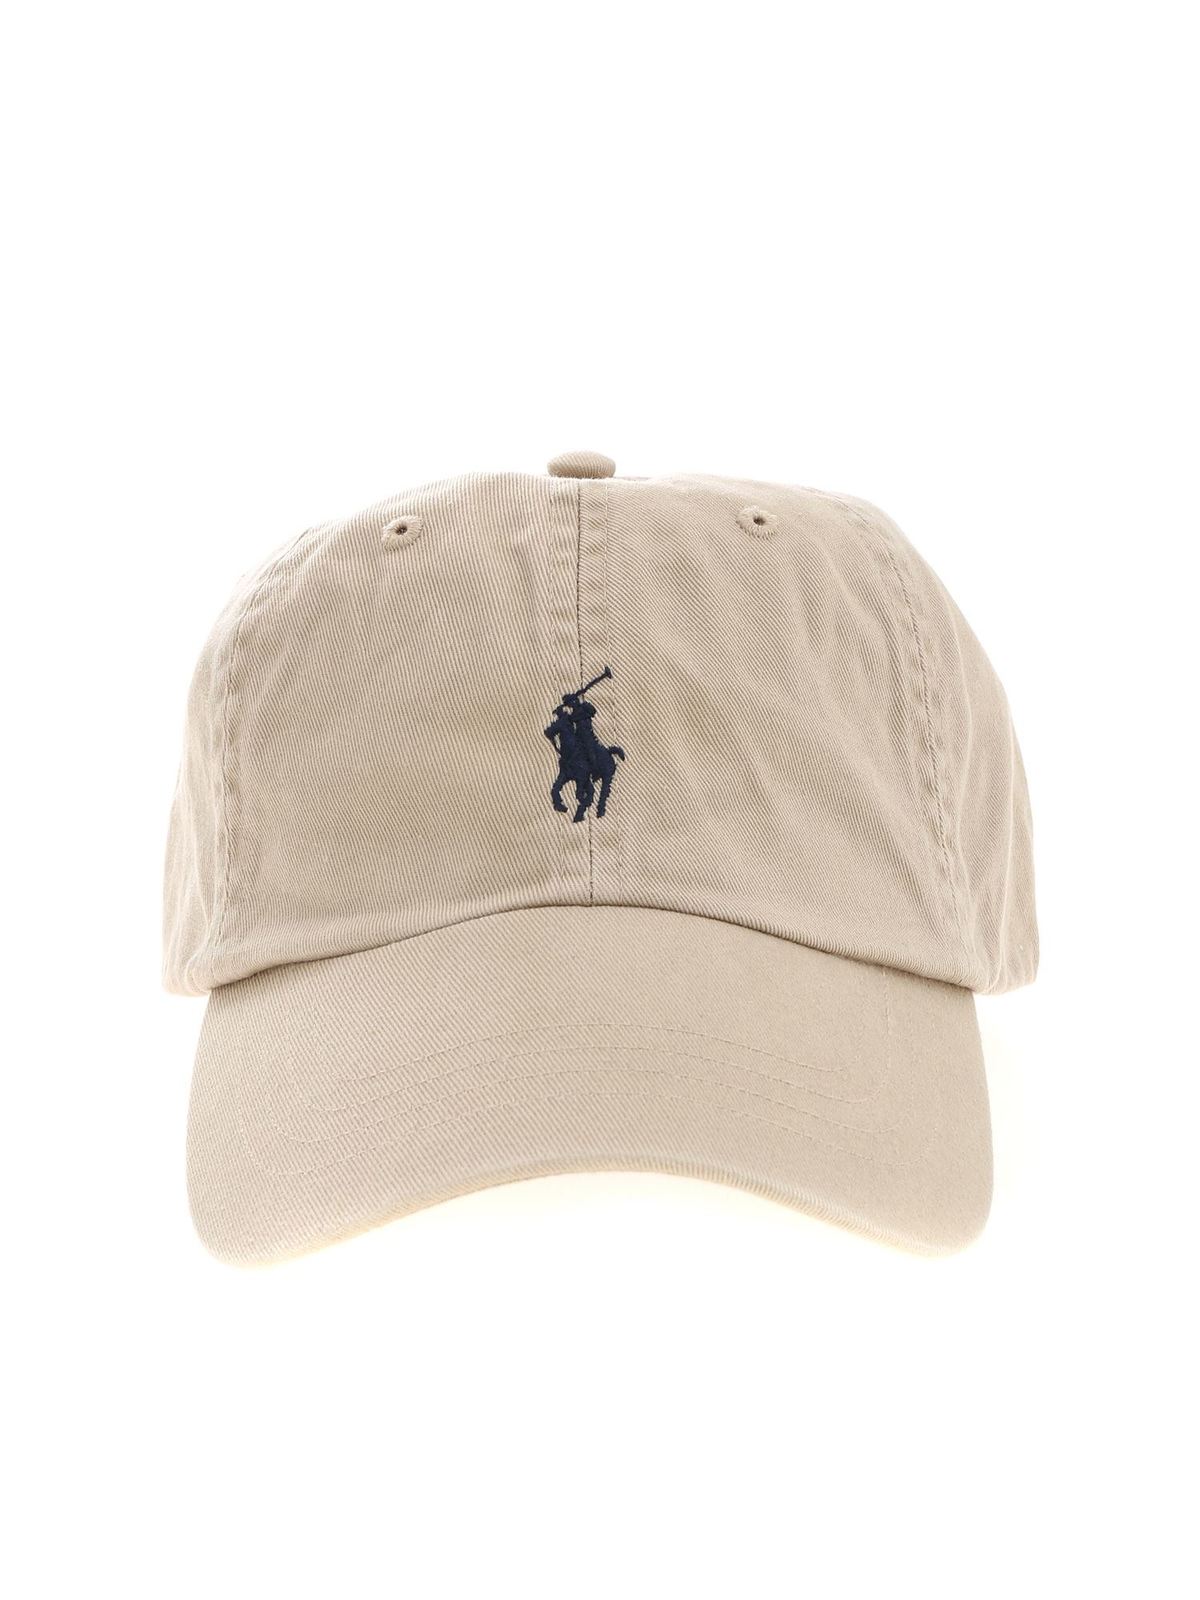 in - beige logo with 710548524005 Ralph Lauren cap caps - & Hats Polo Baseball